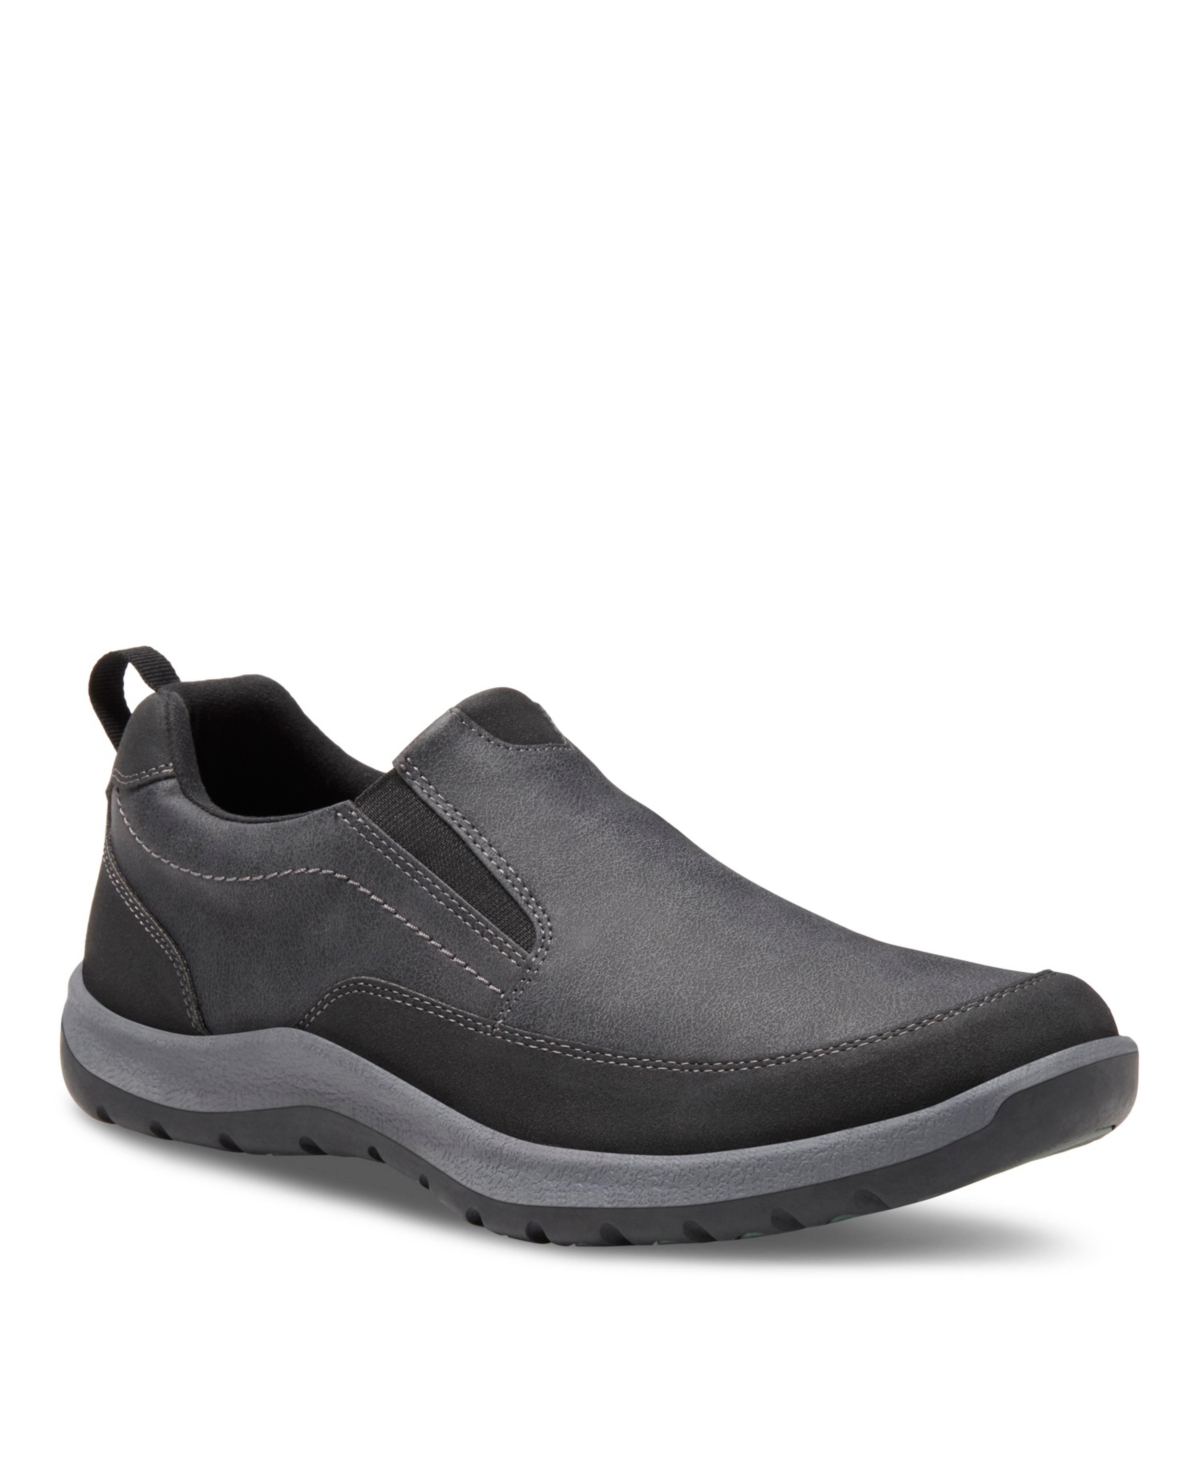 Men's Spencer Slip On Shoes - Black